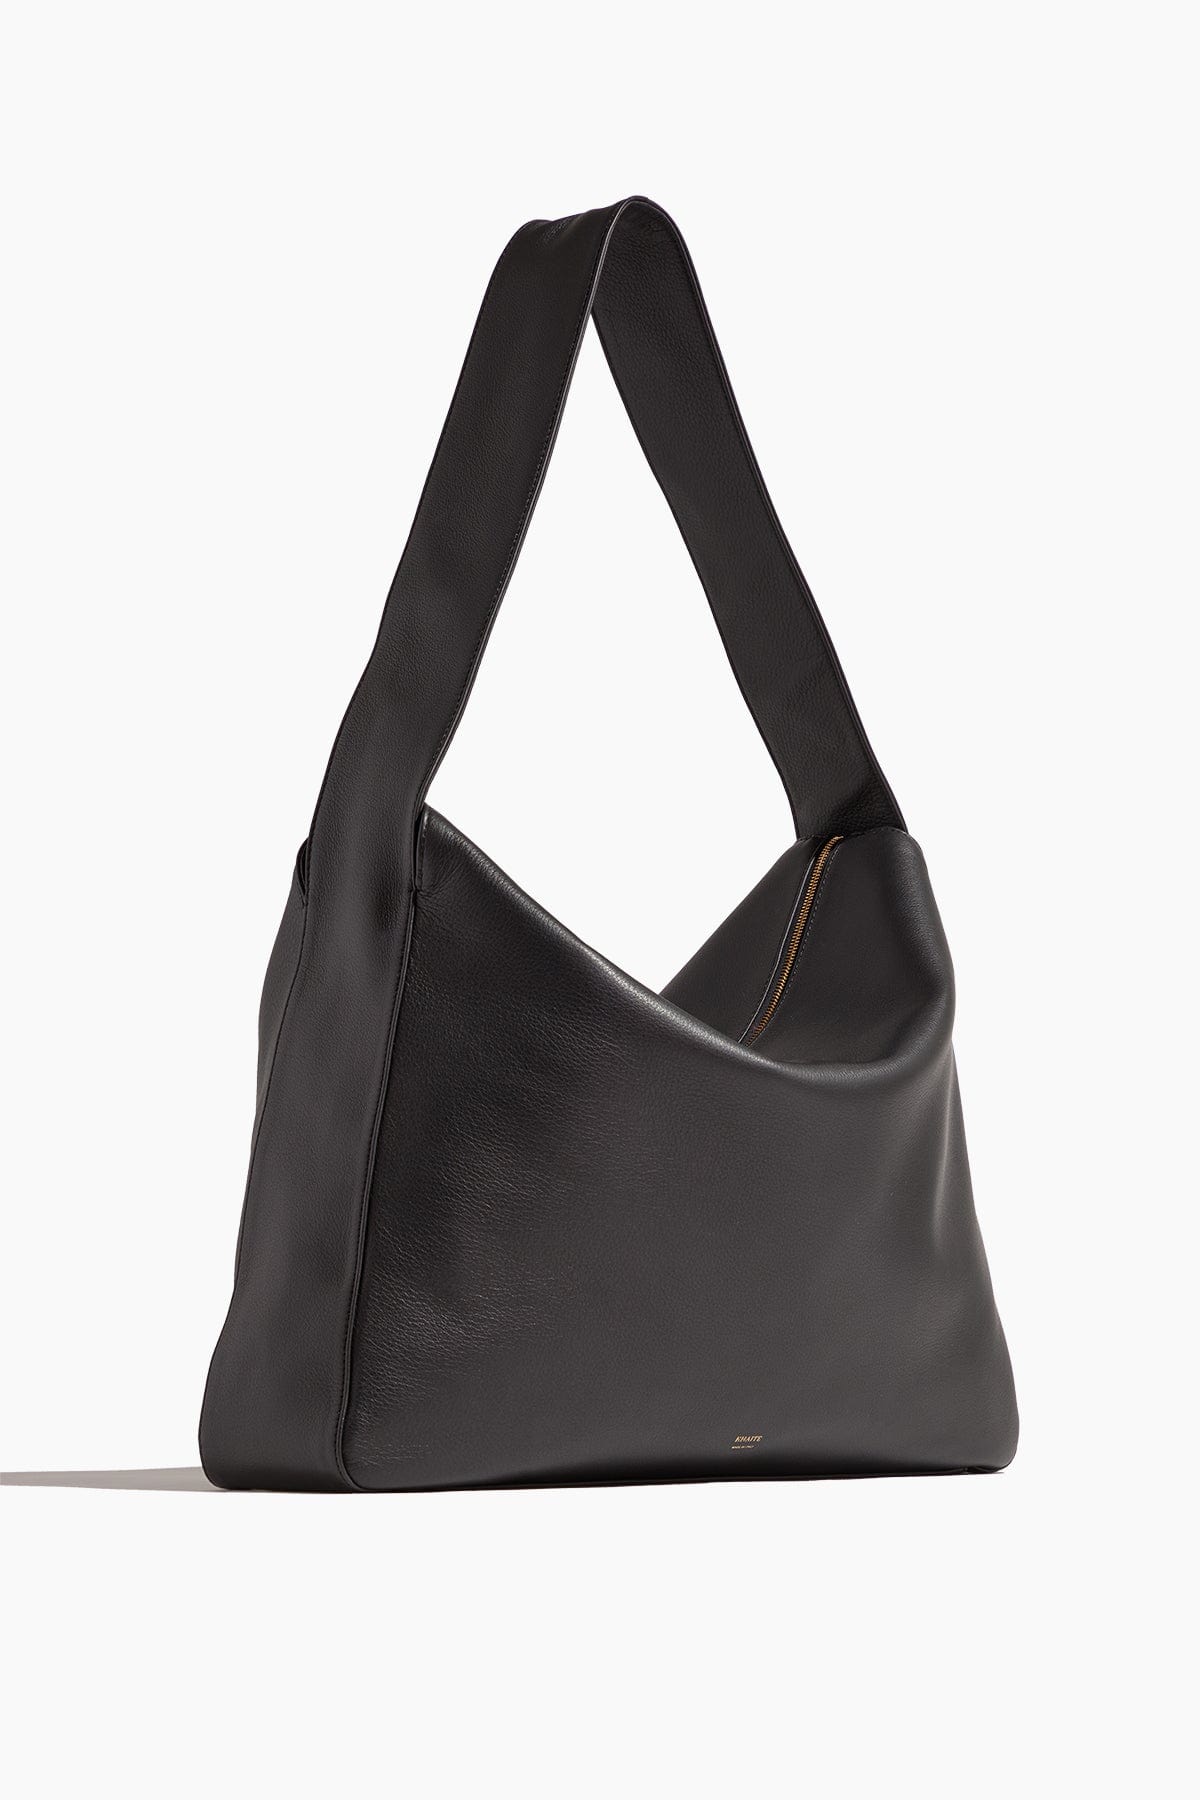 Khaite Shoulder Bags Elena Large Shoulder Bag in Black Khaite Elena Large Shoulder Bag in Black